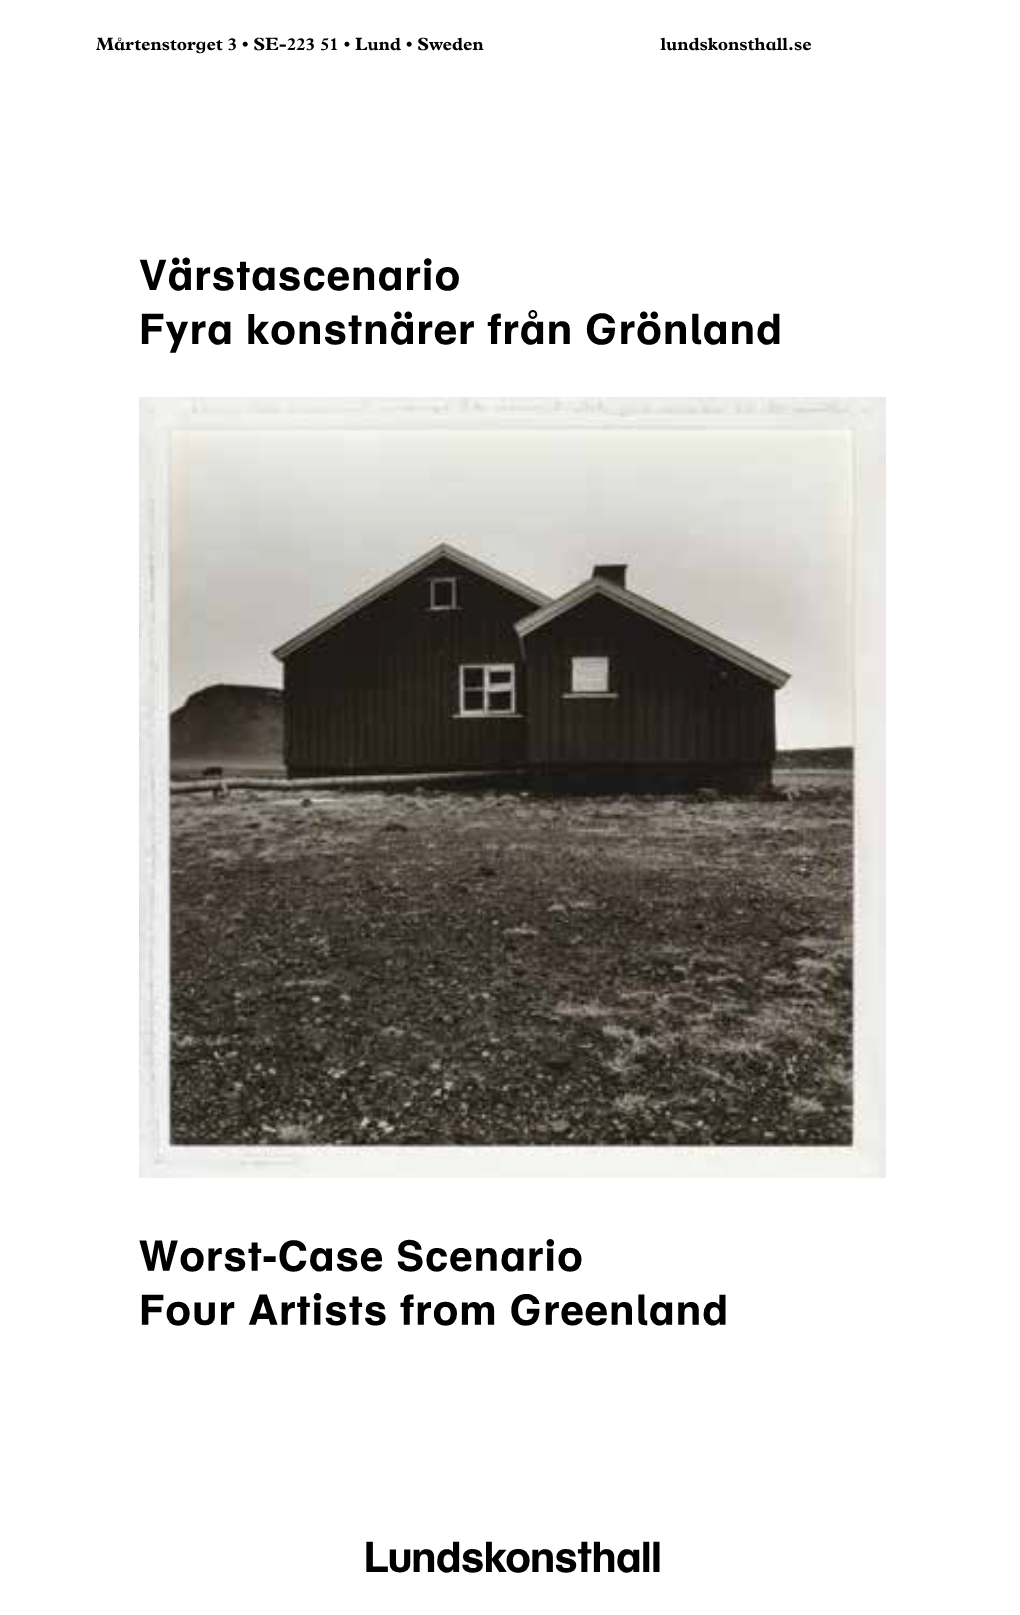 Värstascenario Fyra Konstnärer Från Grönland Worst-Case Scenario Four Artists from Greenland